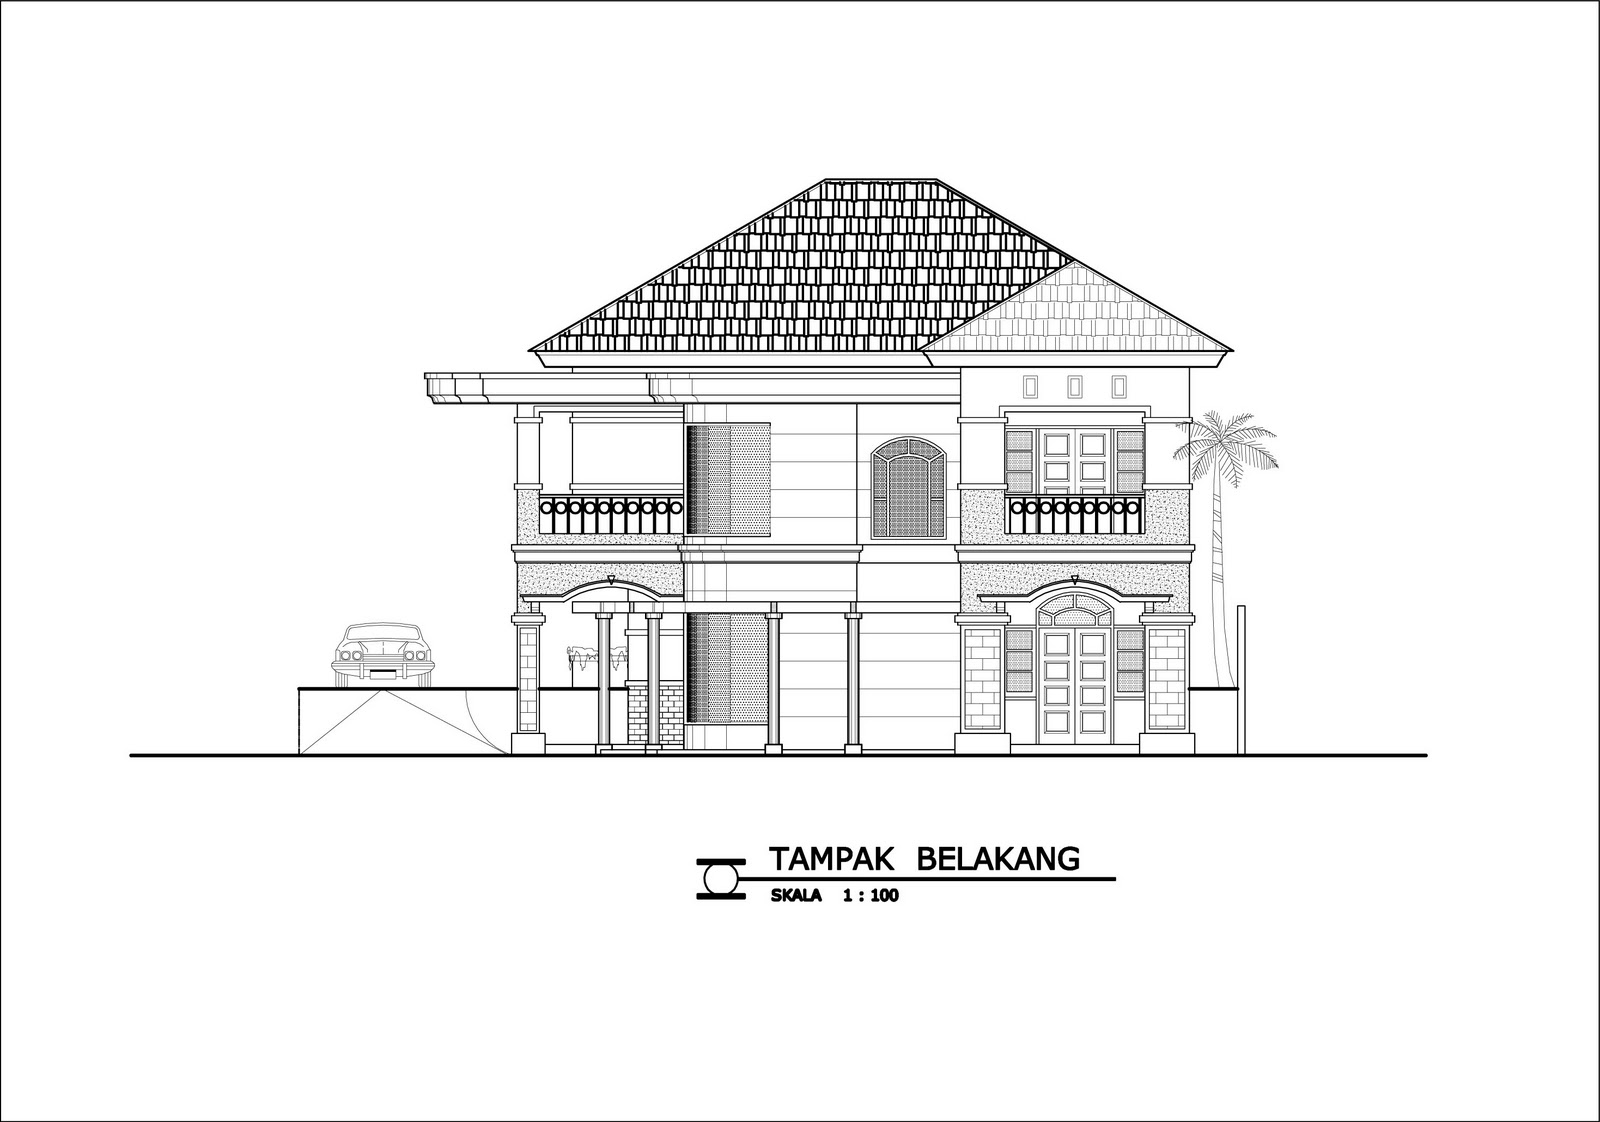 Panduan Bangunan Rumah  Contoh Desain Rumah  DENAH  RUMAH  DI TANAH BERKONTUR TIPE 336 m2